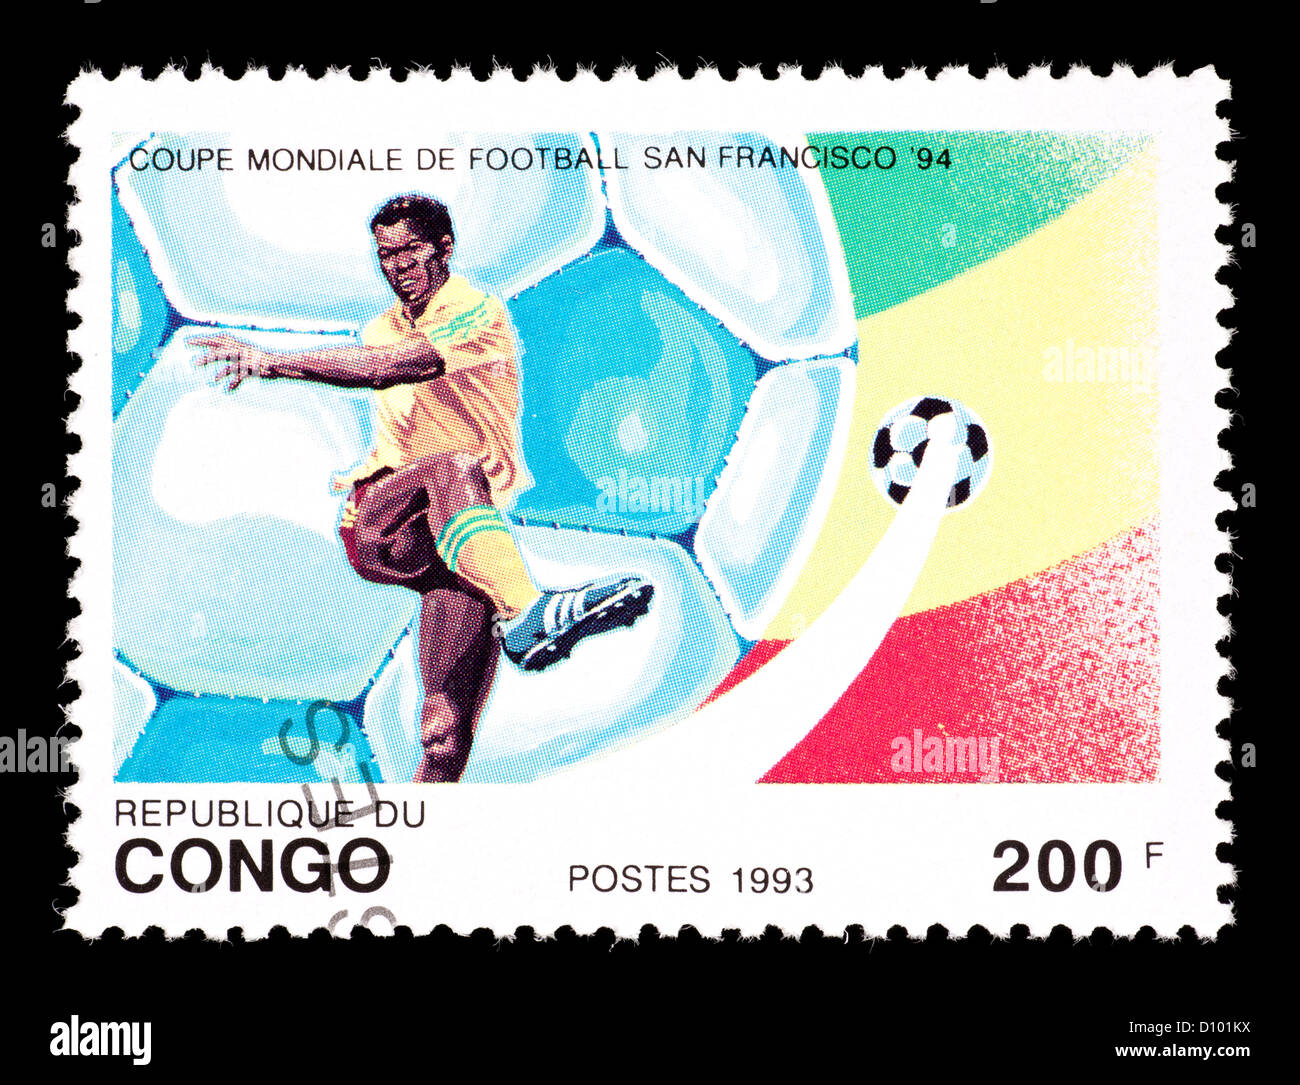 Timbre-poste de Congo représentant représentant un joueur de football, émis pour la Coupe du Monde de Football 1994 aux États-Unis. Banque D'Images